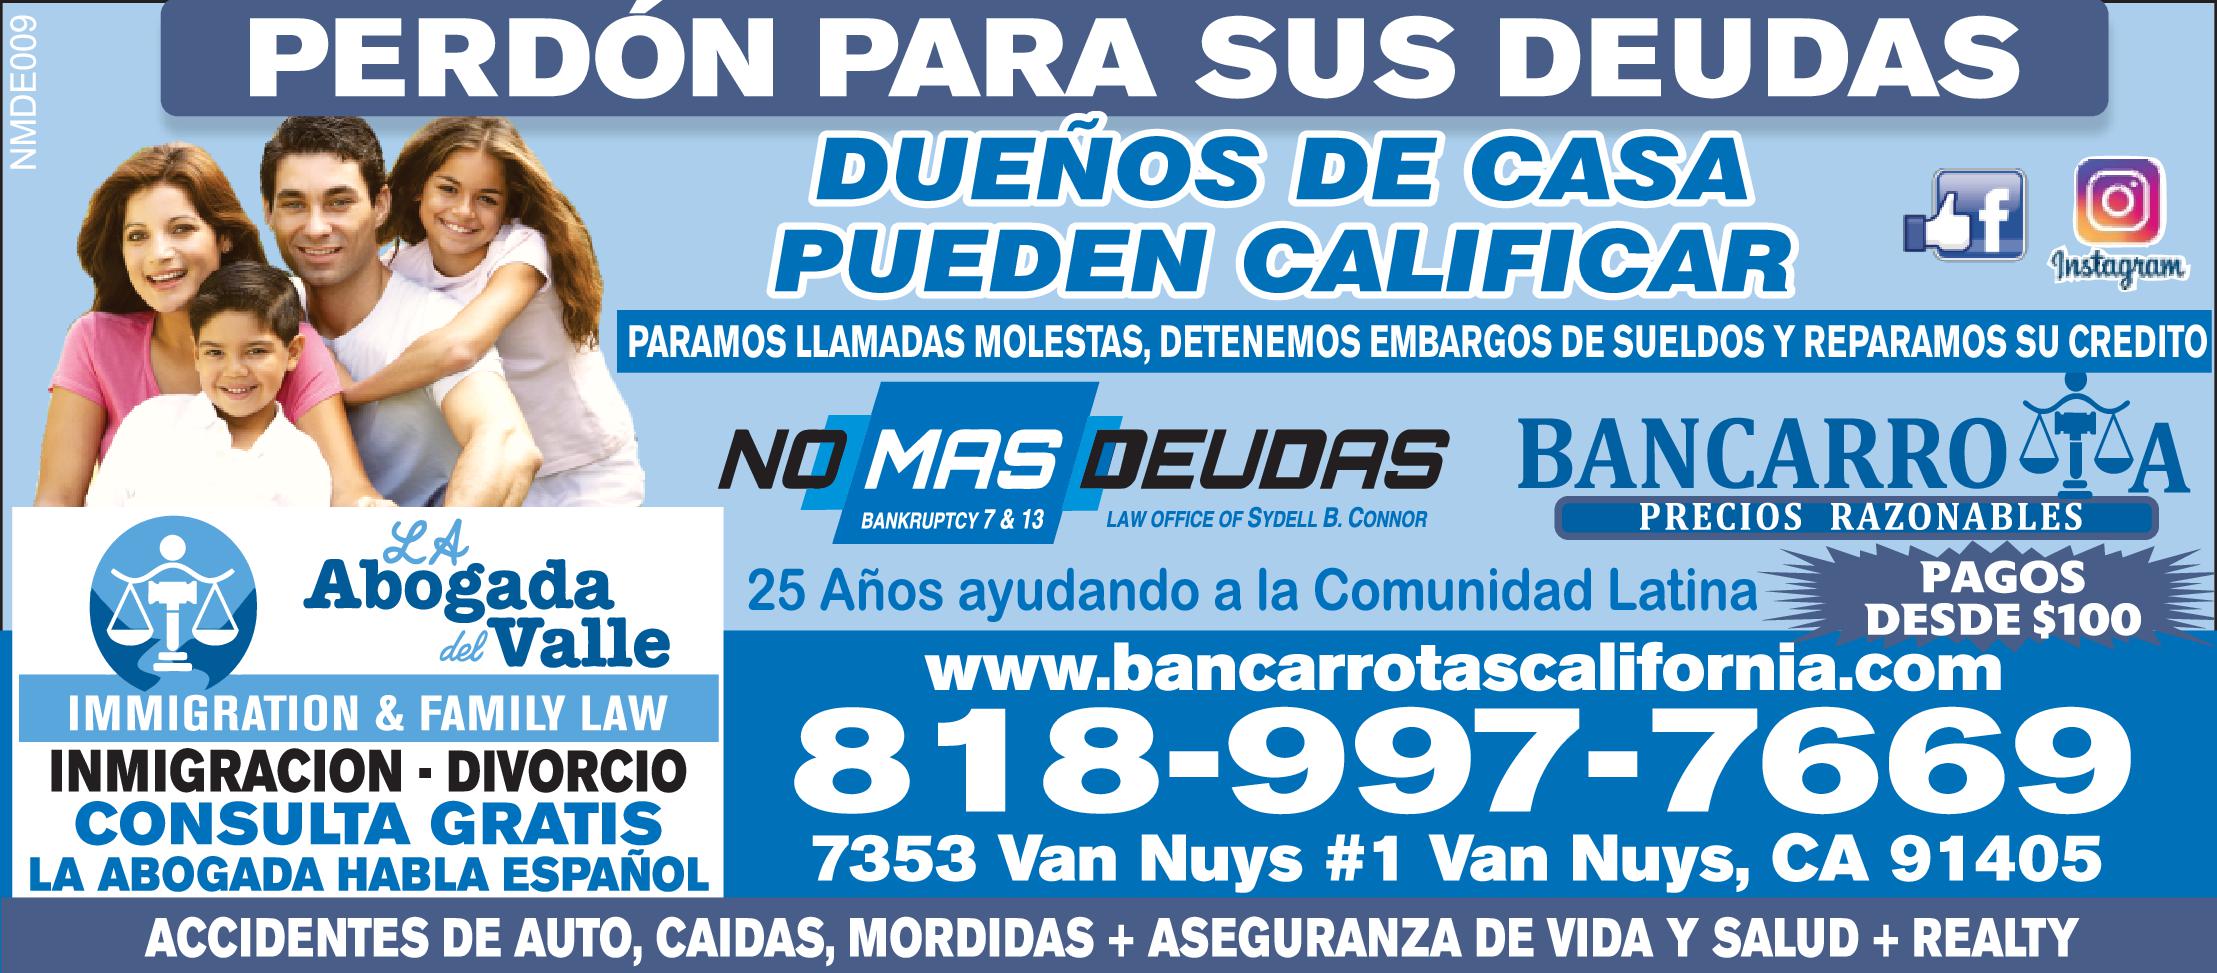 PERDÓN PARA SUS DEUDAS DUENOS DE CASA PUEDEN CALIFICAR-PARAMOS LLAMADAS MOLESTAS, DETENEMOS EMBARGOS DE SUELDOS-REPARAMOS SU CREDITO NO MAS DEUDAS BANCARROTA- PRECIOS RAZONABLES  BANKRUPTCY 13 PAGOS DESDE $100 www.bancarrotascalifornia.com IMMIGRATION FAMILY LAW INMIGRACION DIVORCIO 818-997-7669 CONSULTA GRATIS LA ABOGADA HABLA ESPAÑOL  ACCIDENTES DE AUTO, CAIDAS, MORDIDAS ASEGURANZA DE VIDA SALUD REALTY NMDE009